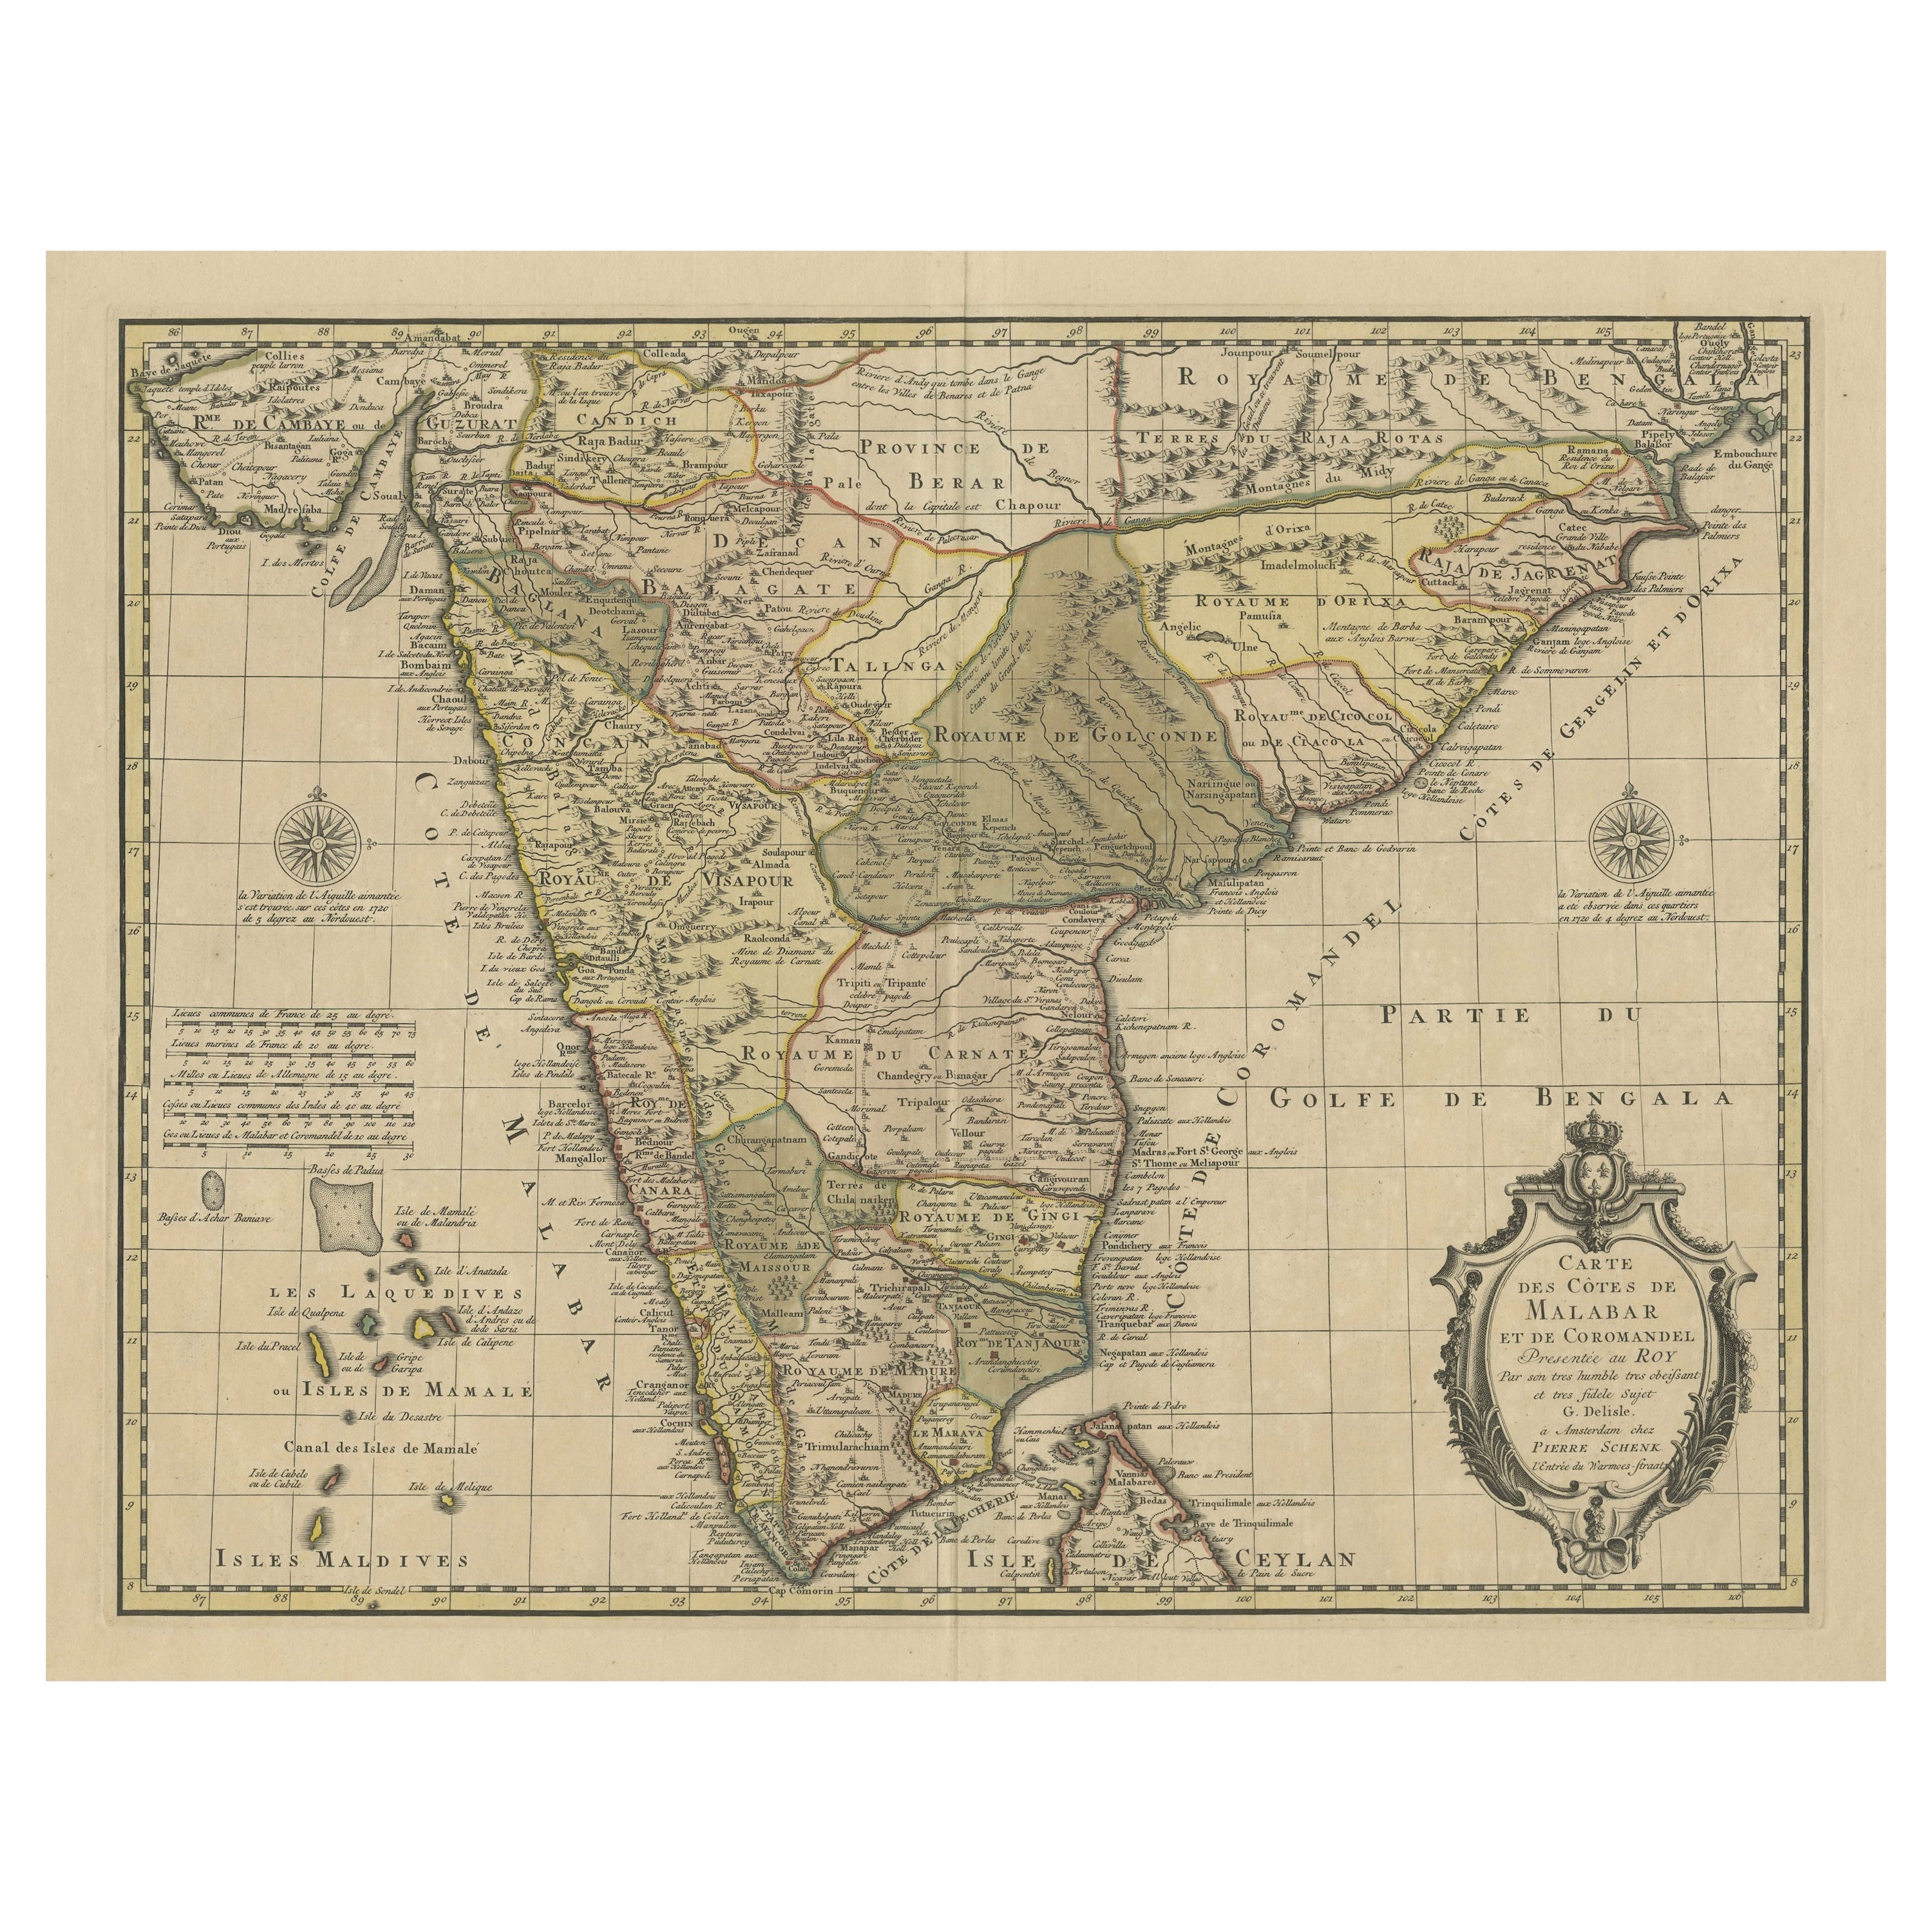 Detaillierte dekorative antike Karte der Kste von Malabar und Coromandel, Indien